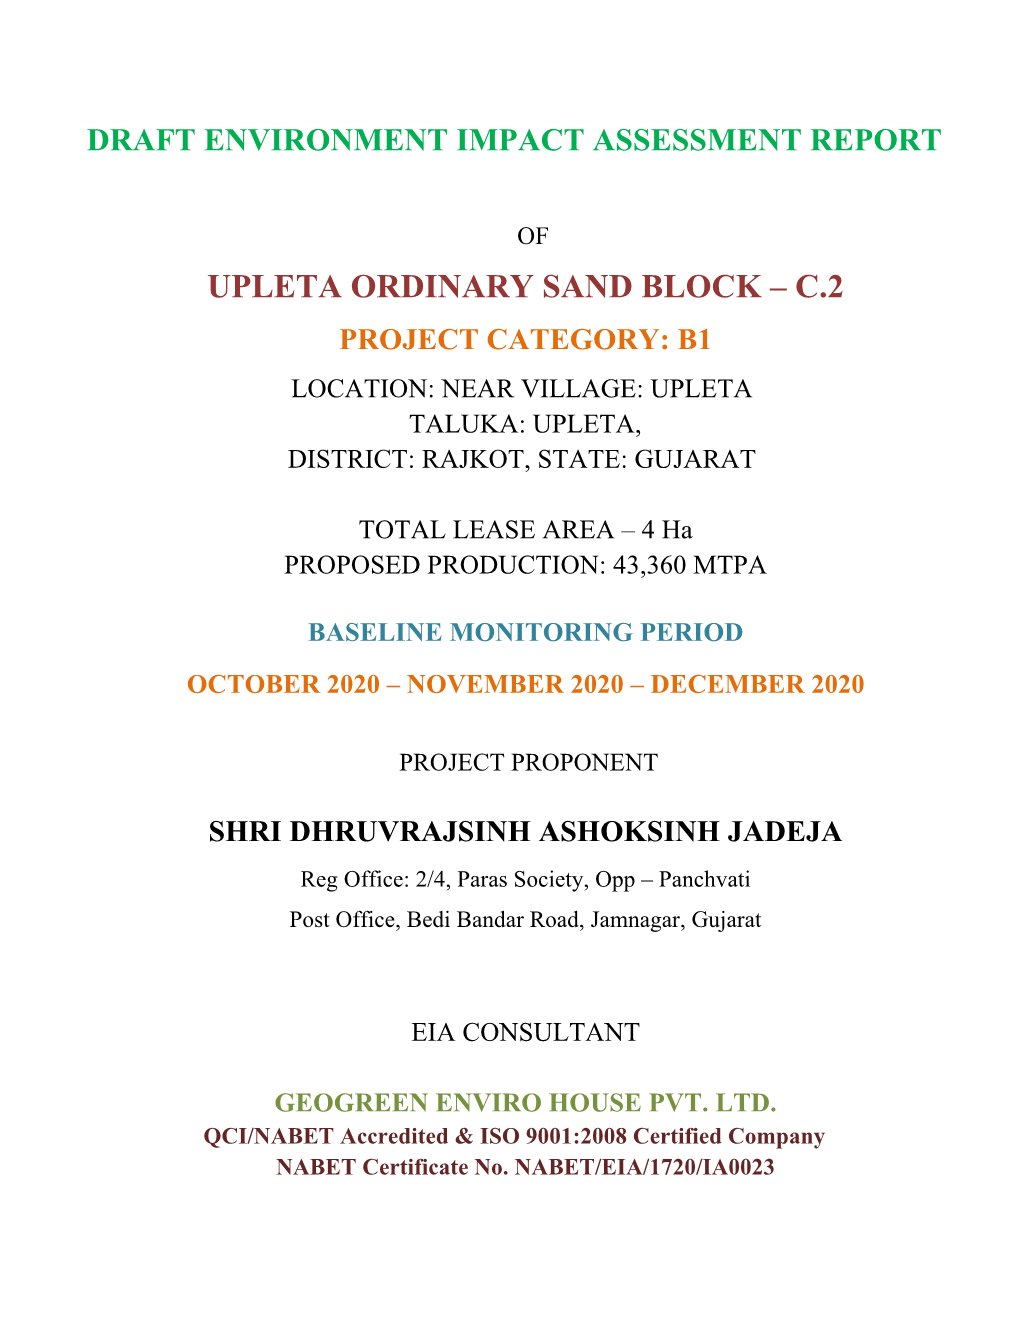 Upleta Ordinary Sand Block – C.2 Project Category: B1 Location: Near Village: Upleta Taluka: Upleta, District: Rajkot, State: Gujarat